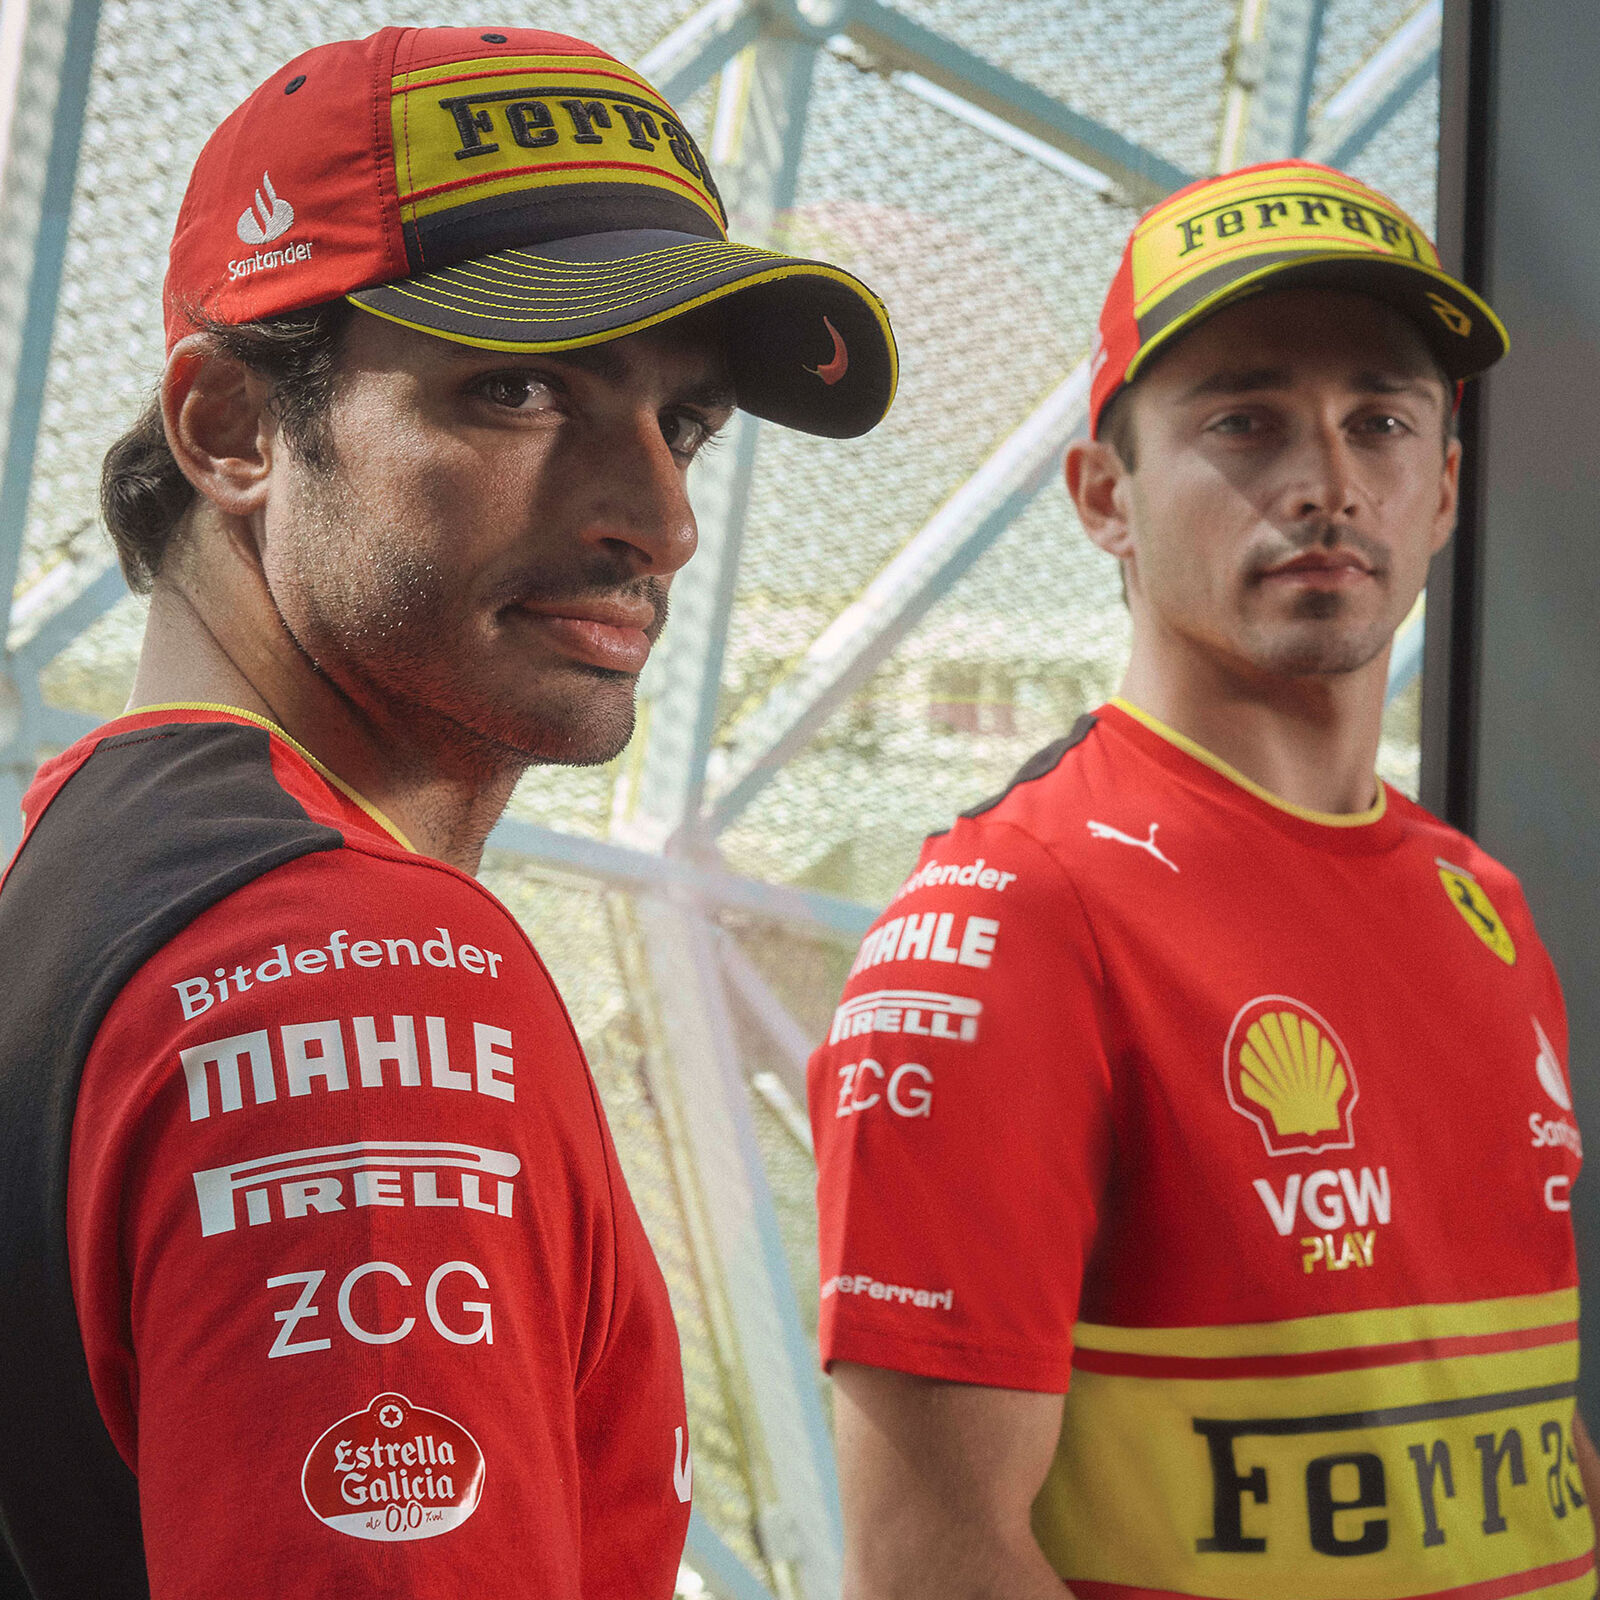 Scuderia Ferrari Camiseta Team